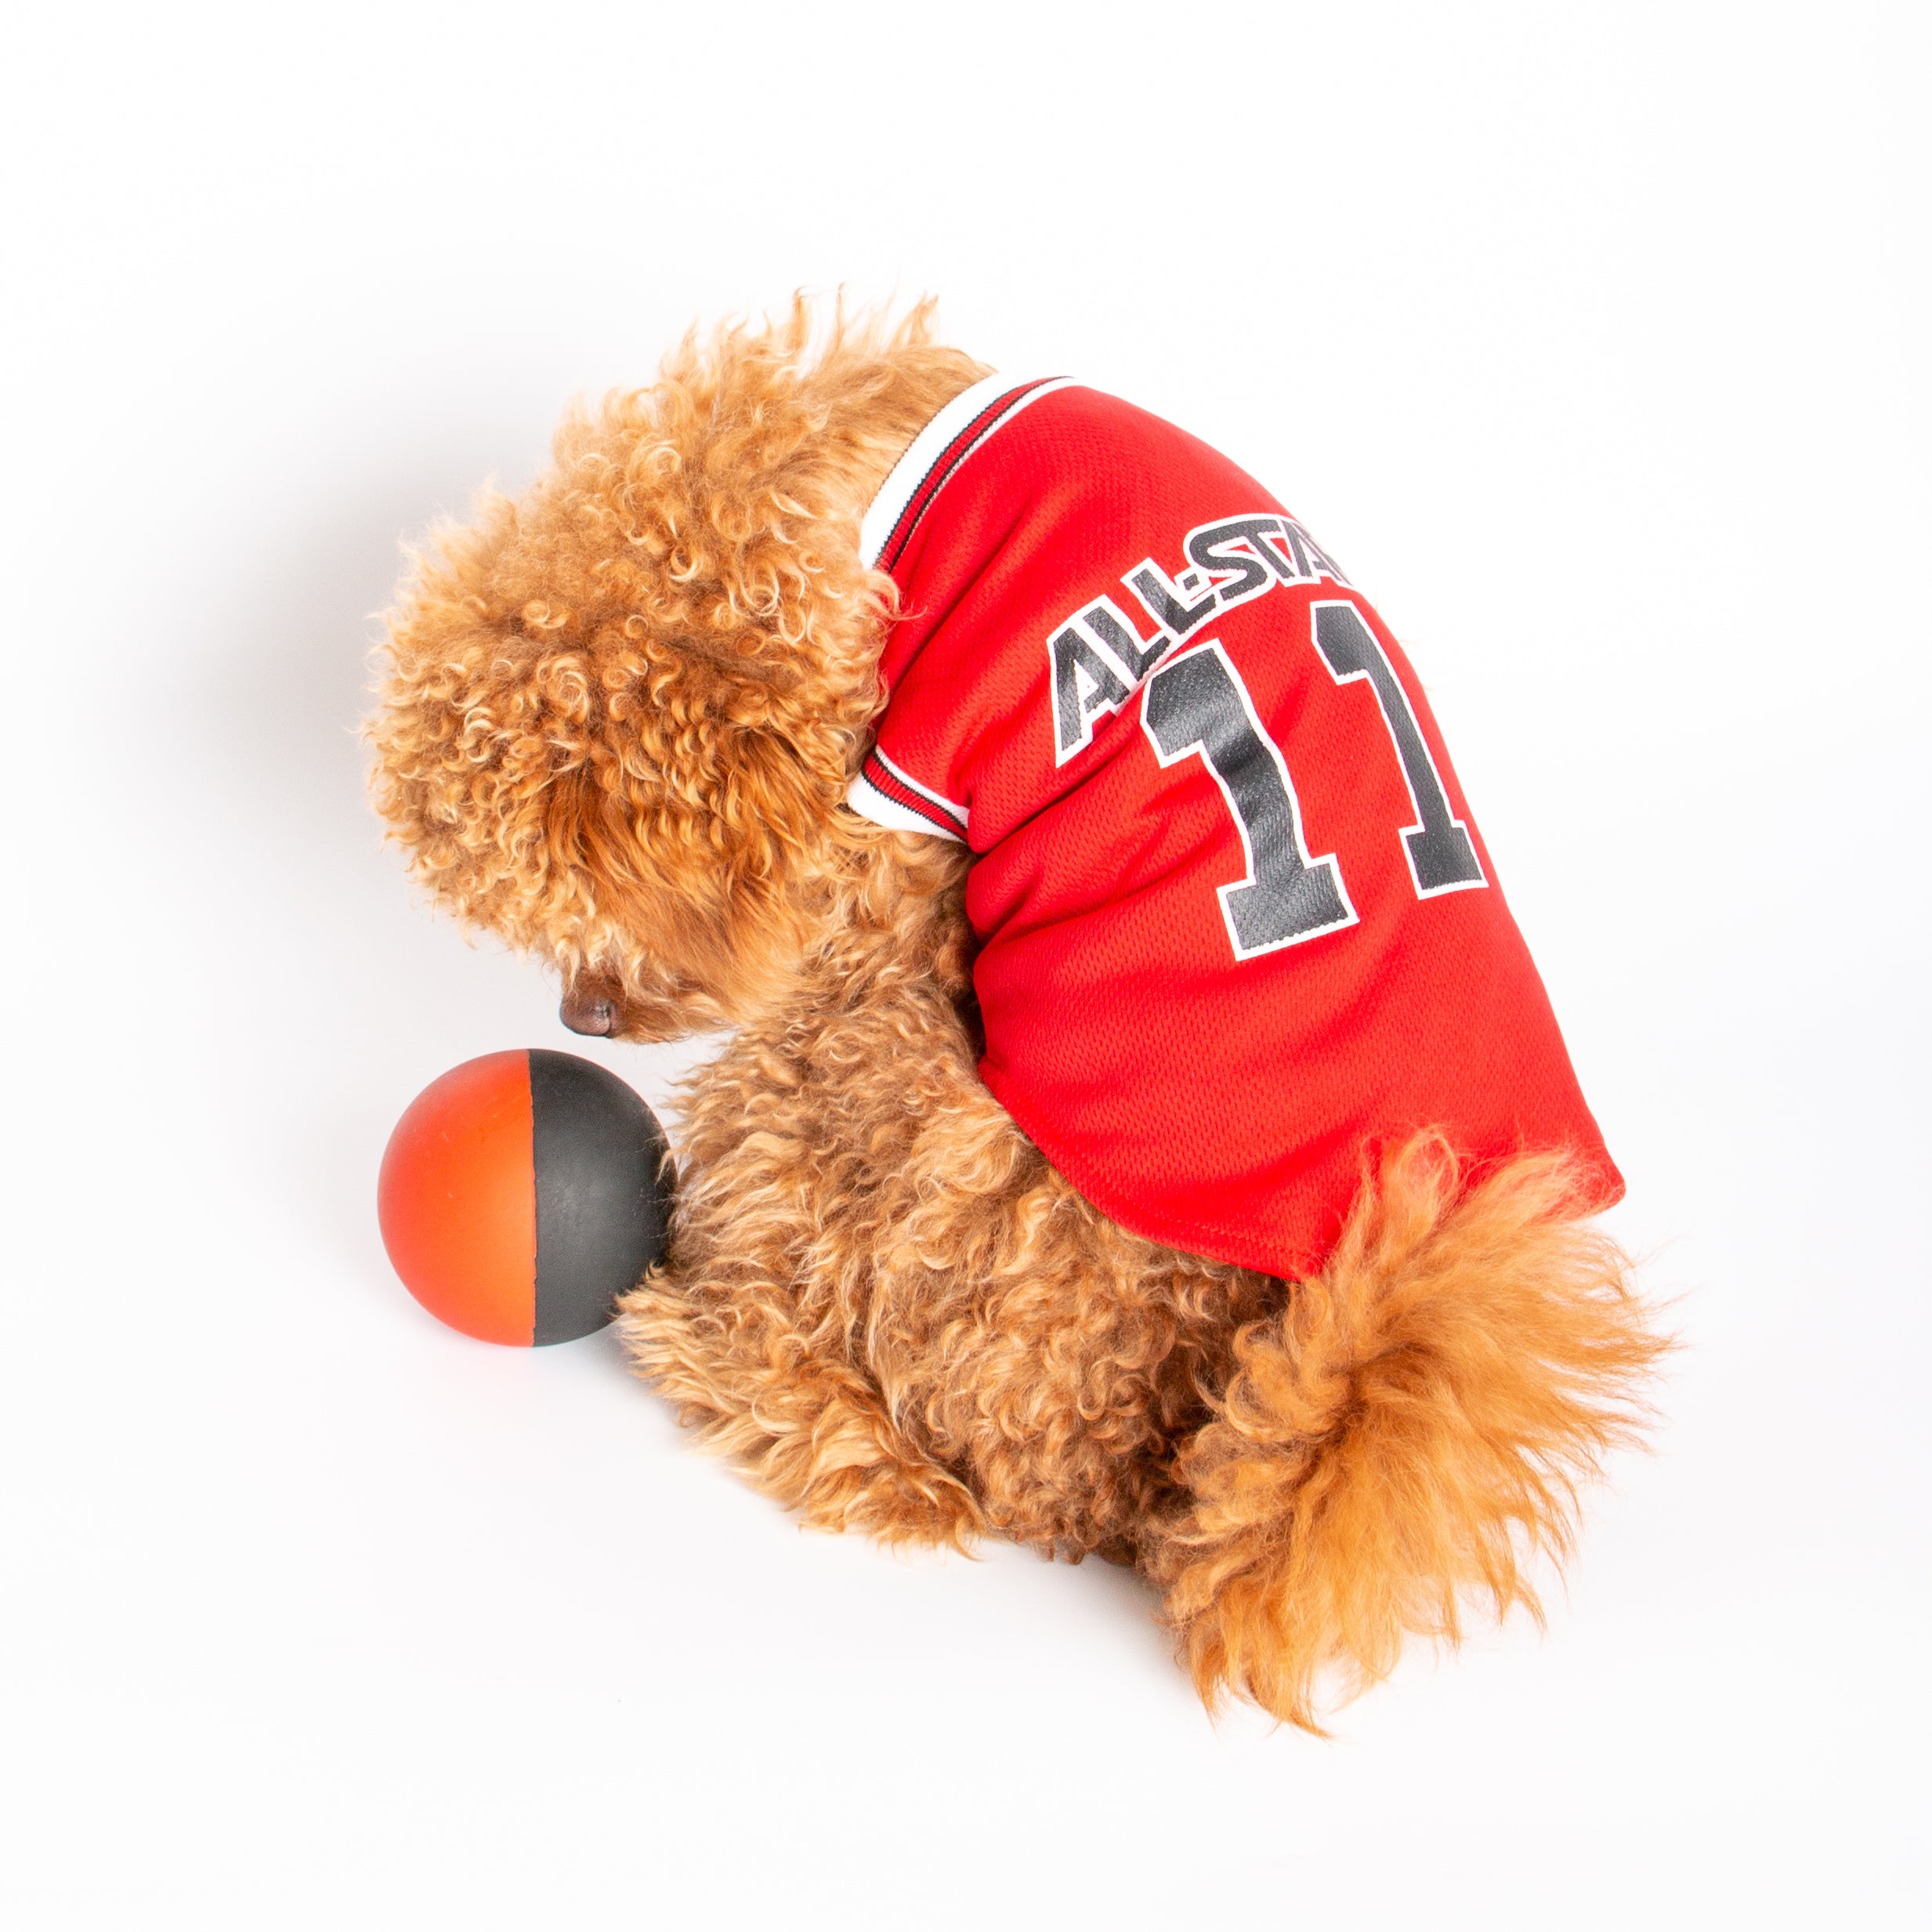 Red Basketball Dog Jersey, Basketball Dog Jersey